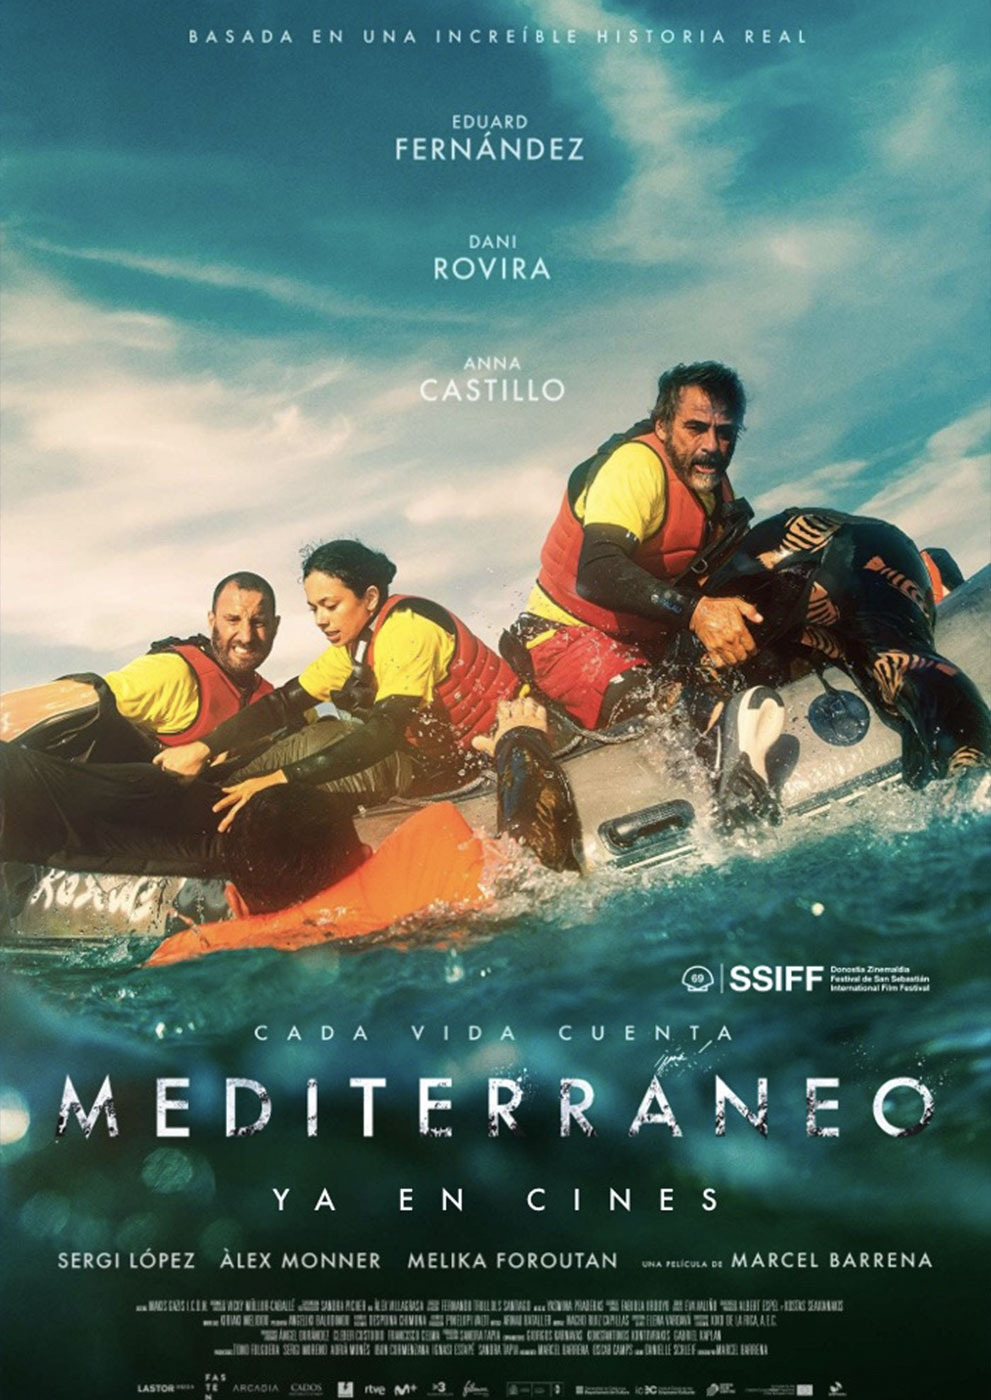 ‘Mediterrani’ és la pel·lícula del mes d’abril del Cicle Gaudí